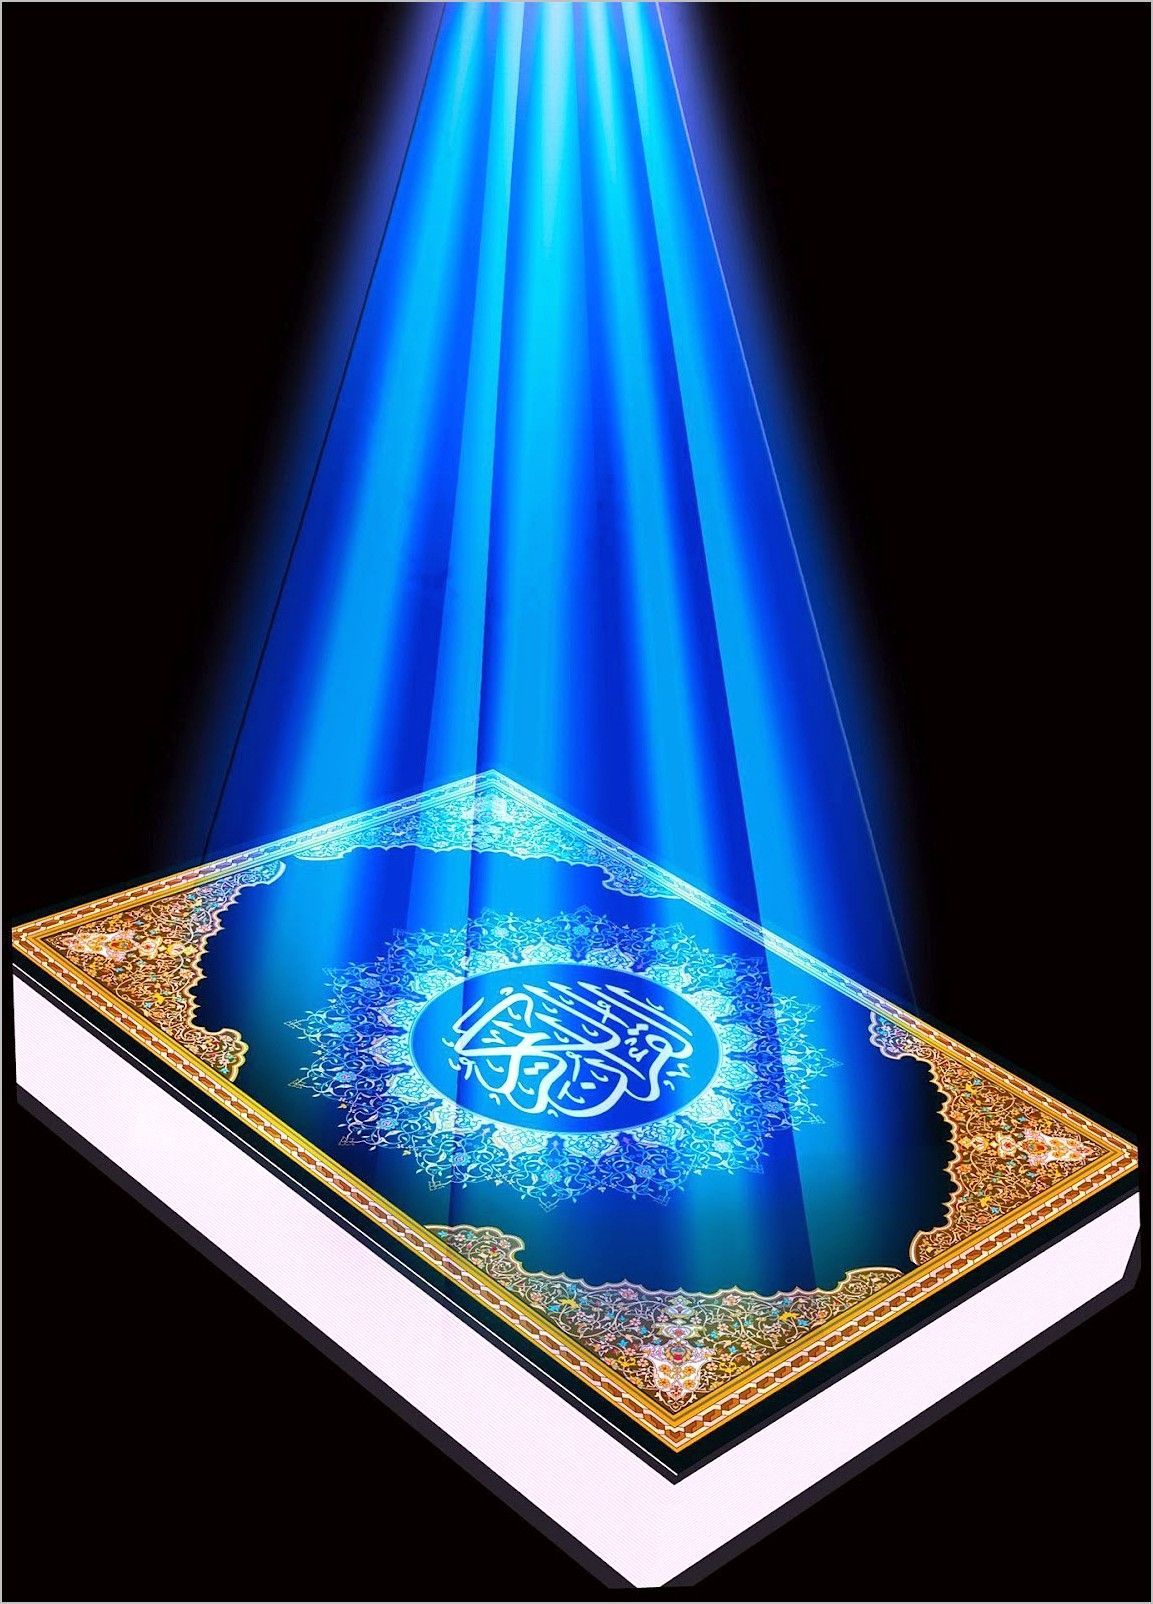 دانلود عکس بسیار زیبا از قرآن کریم با نوری آبی روی آن 